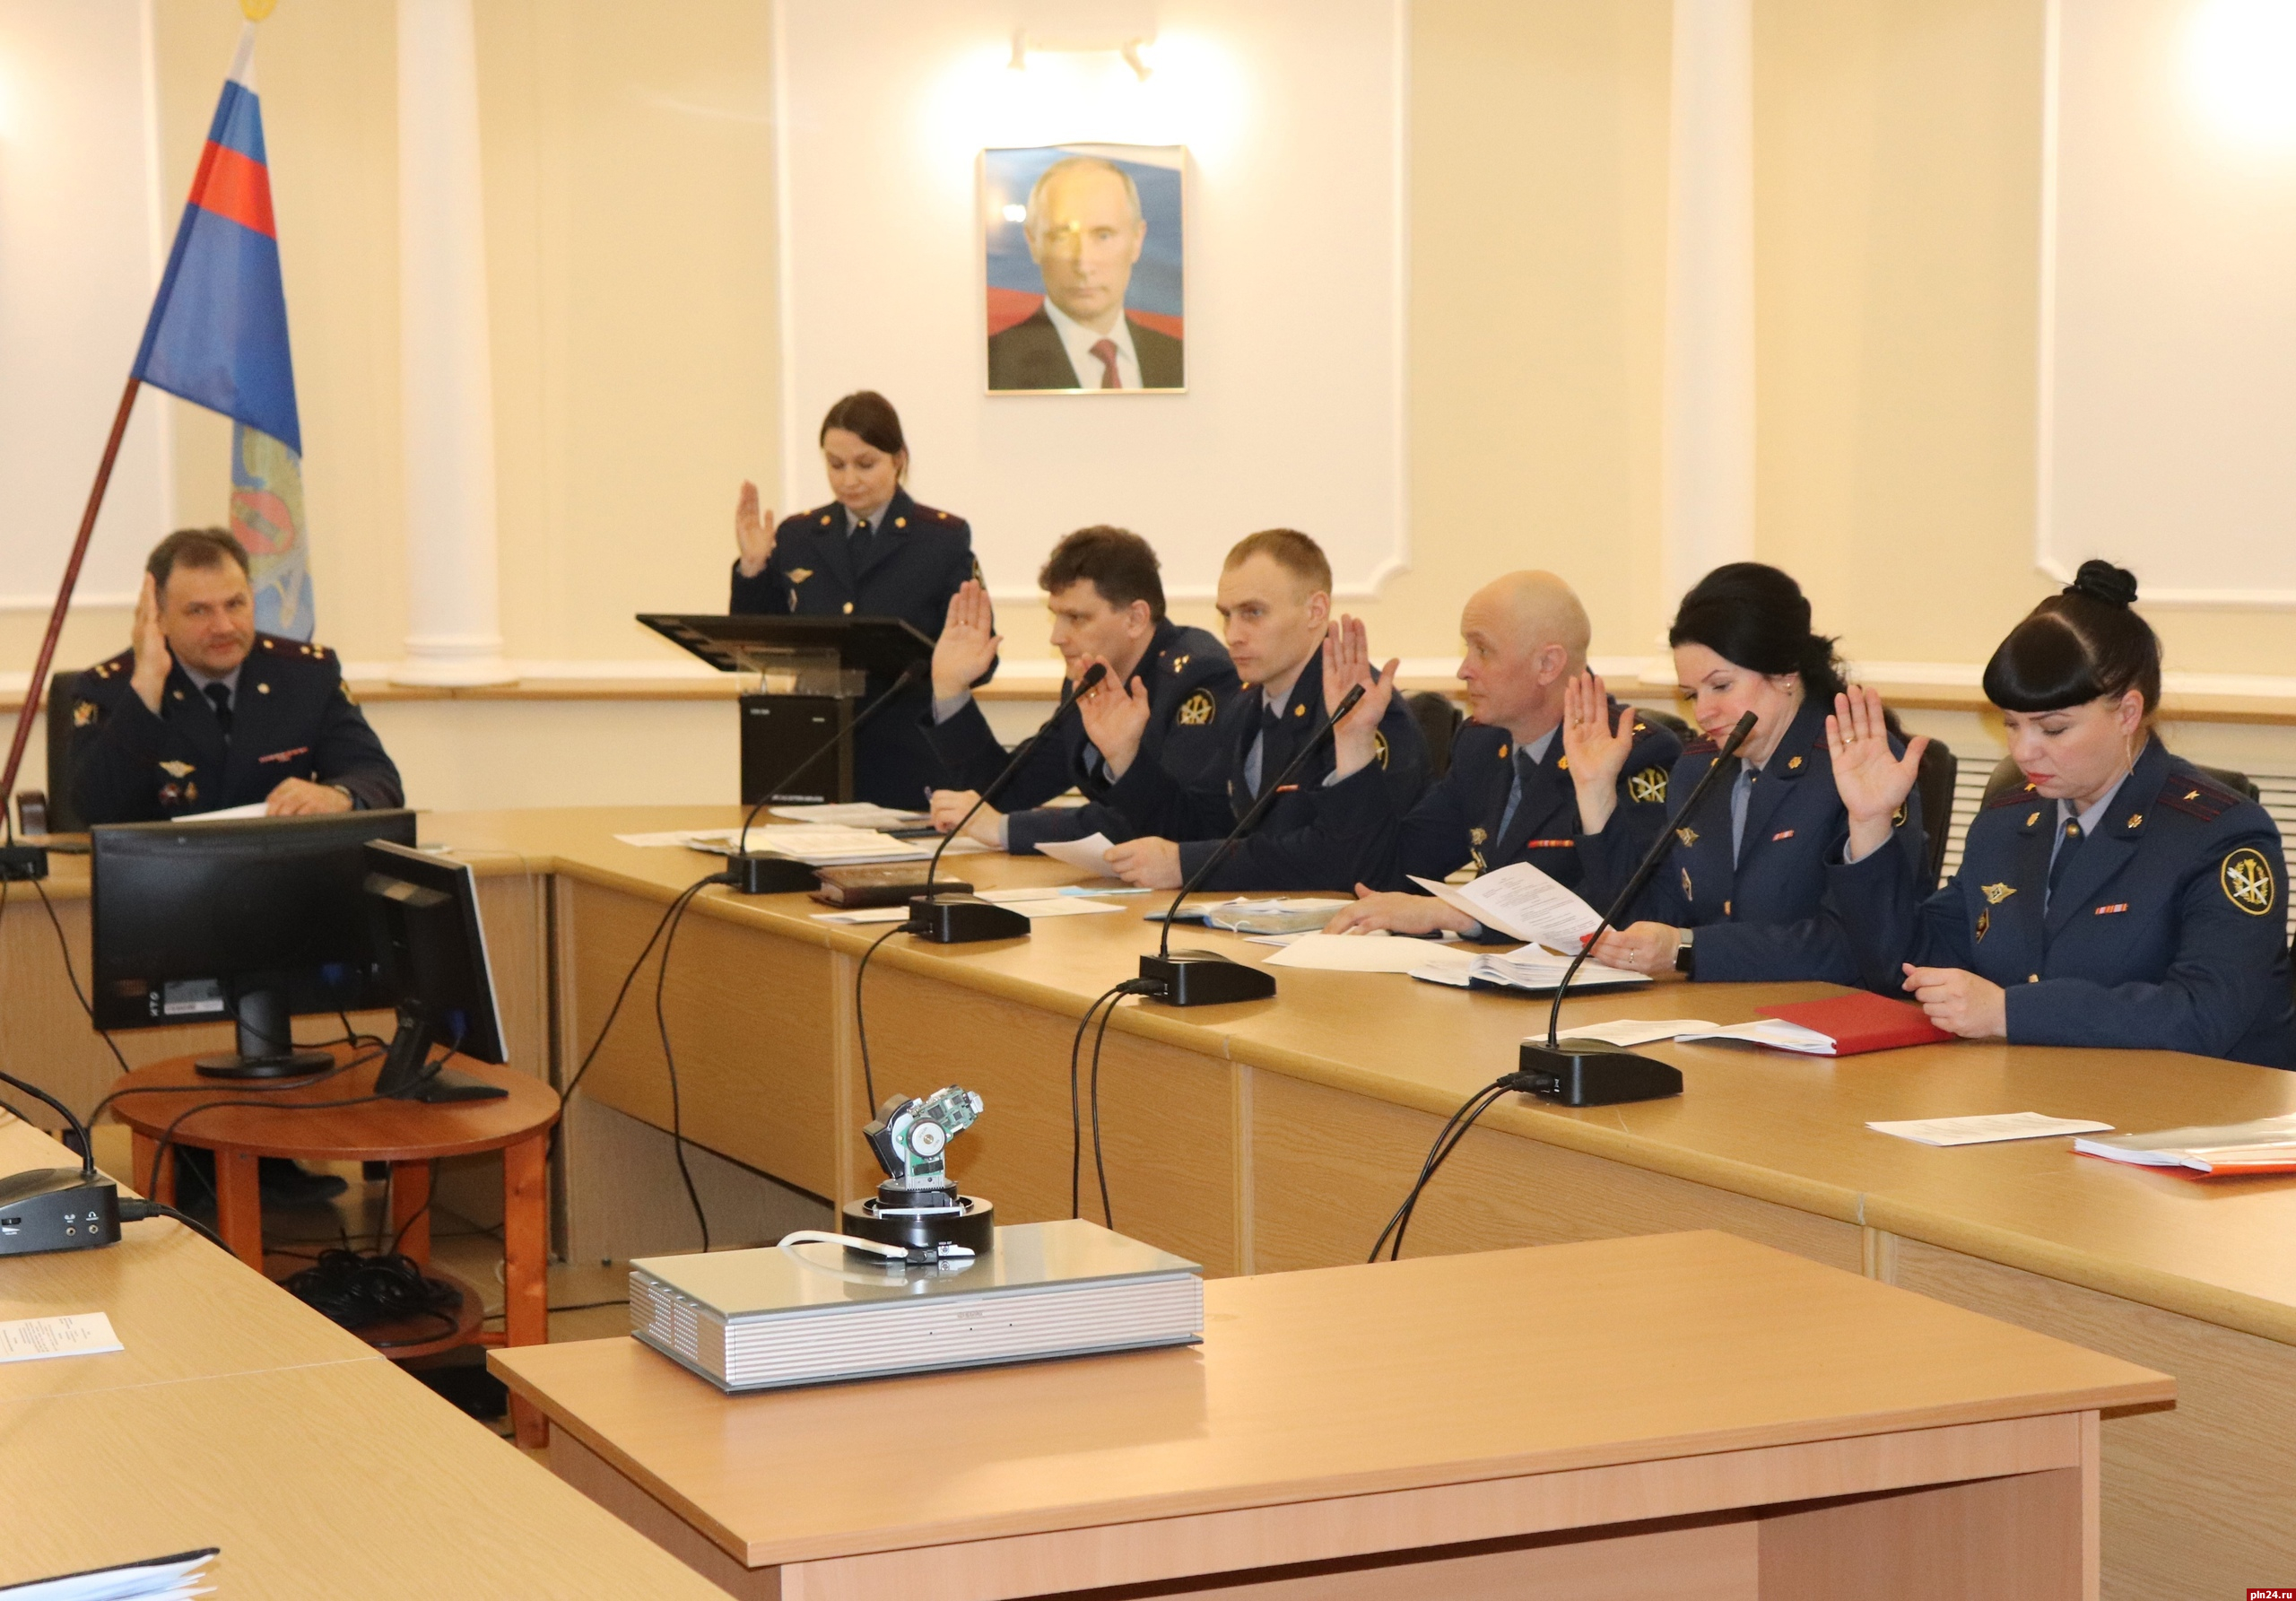 Кандидатов на получение именной стипендии ФСИН определили среди псковских курсантов